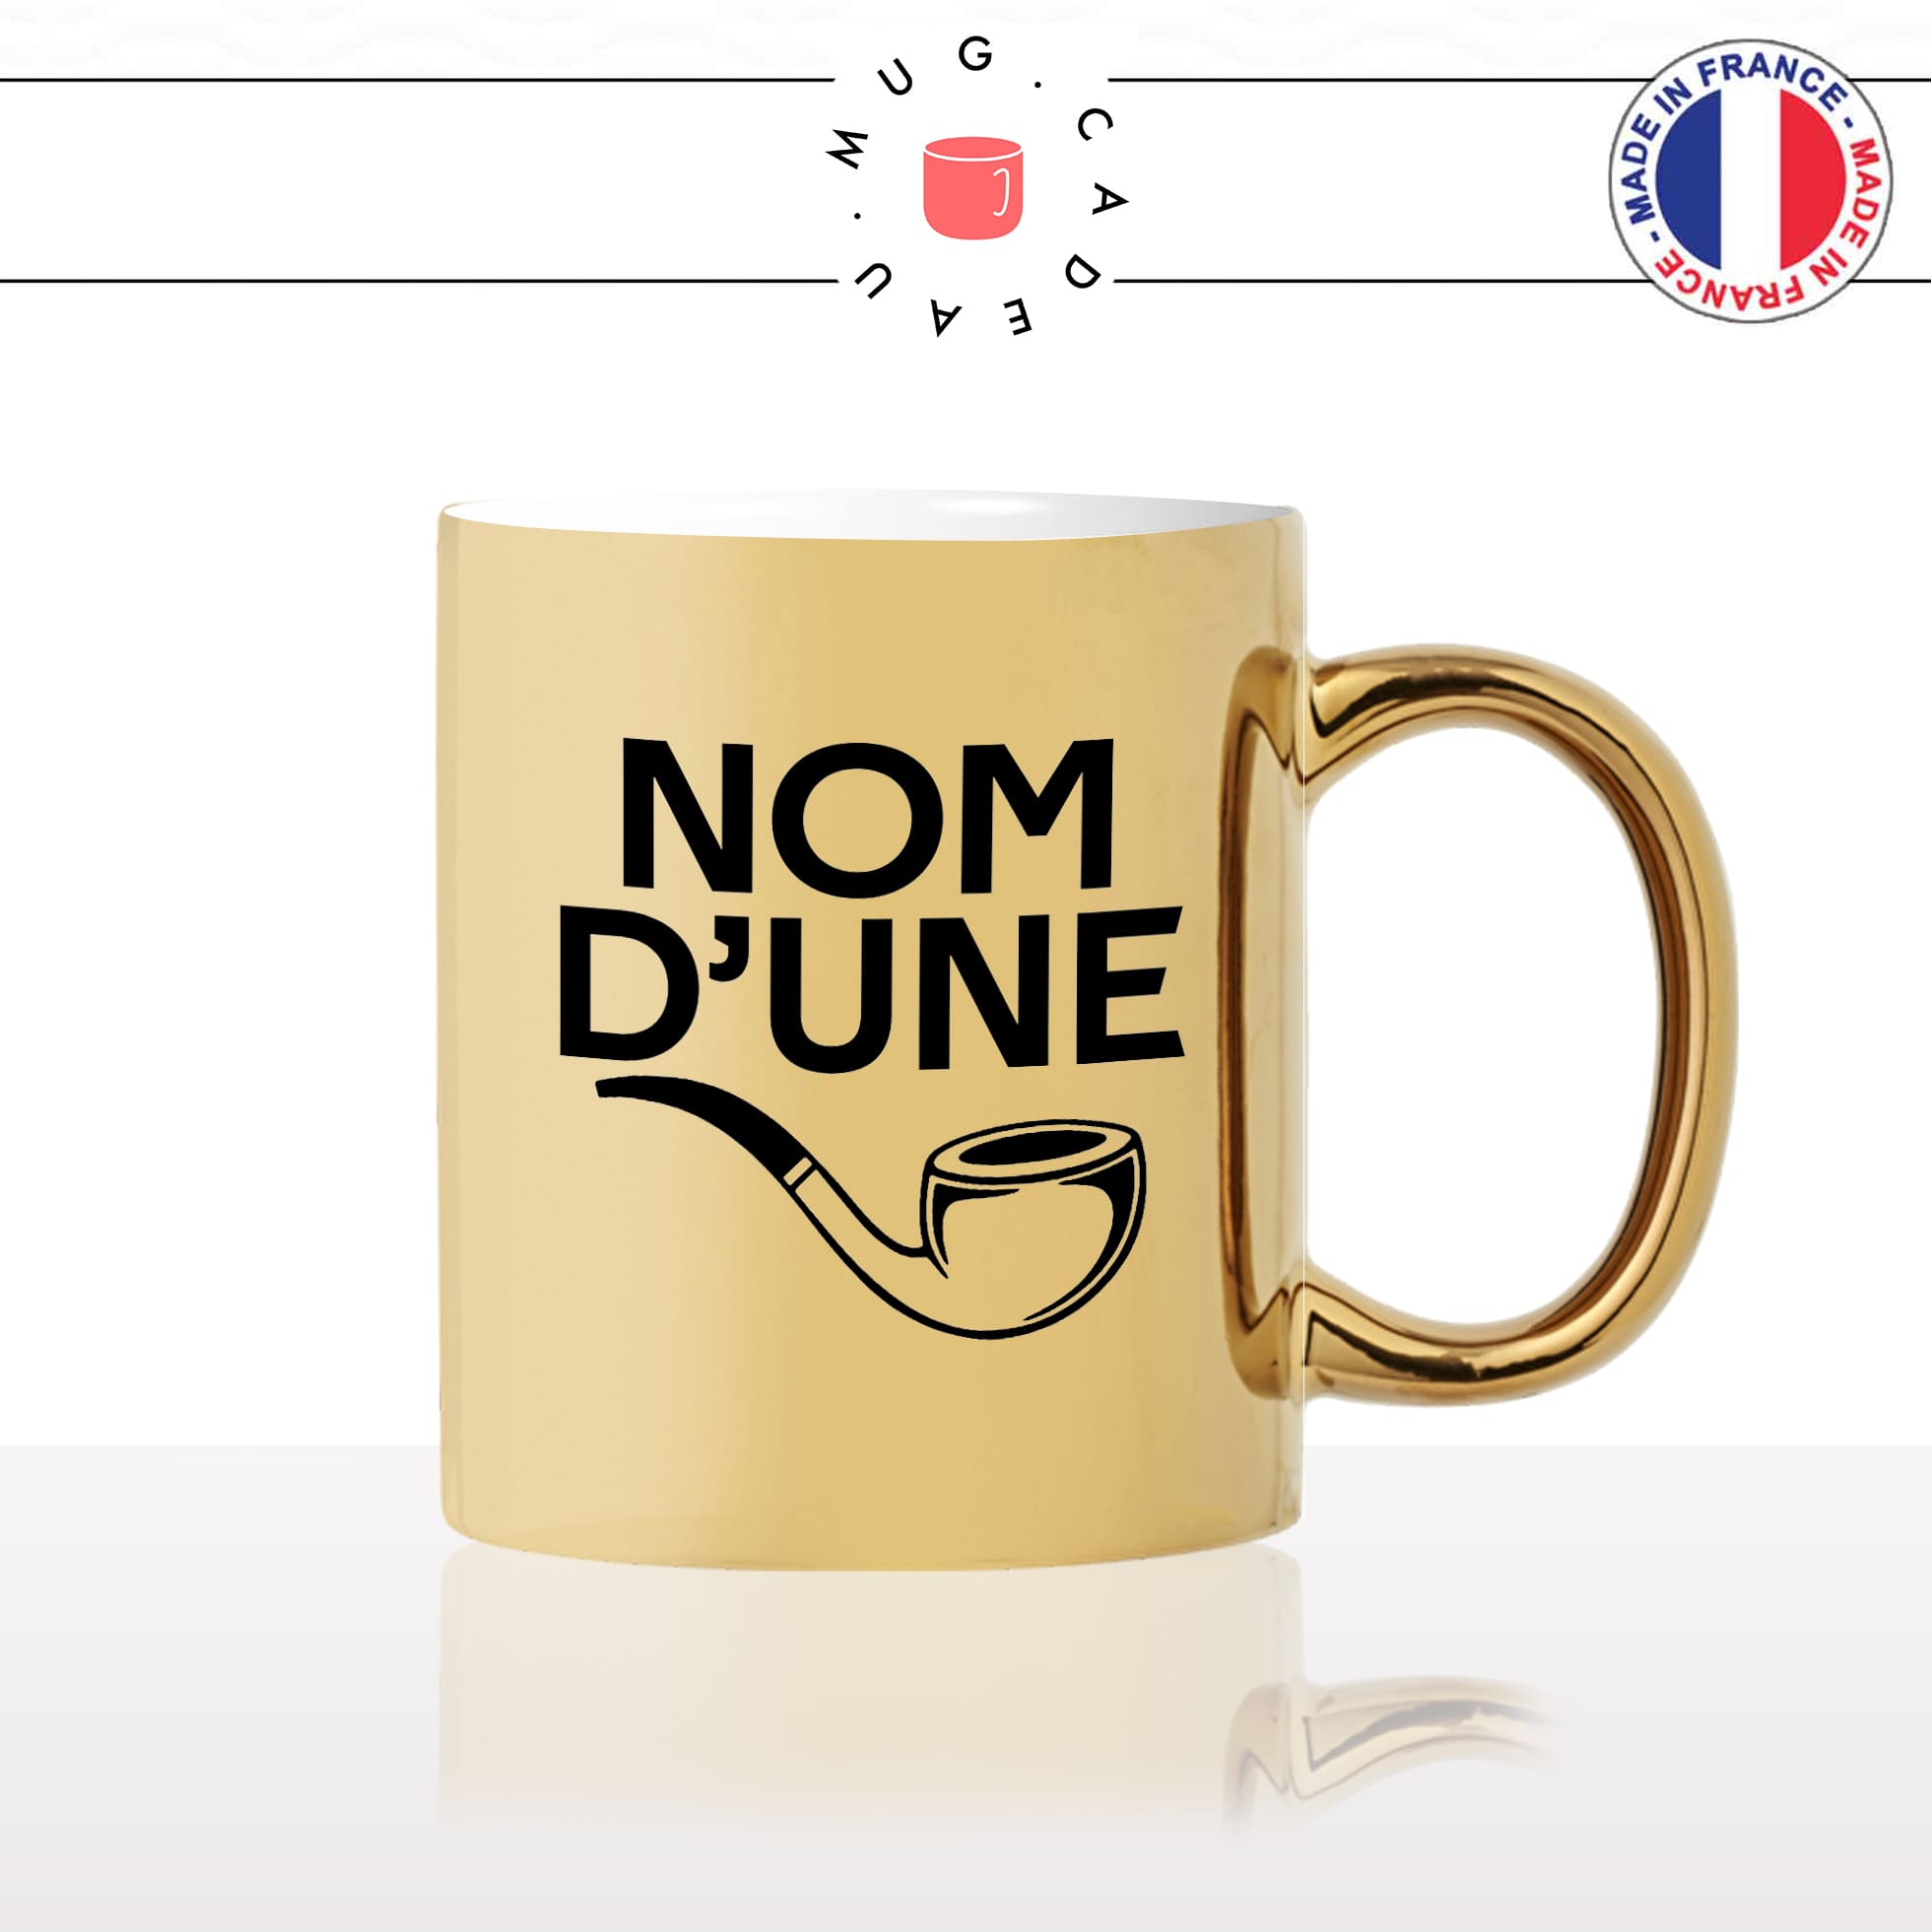 mug-tasse-or-doré-gold-nom-dune-pipe-expression-francaise-putin-fumer-fumeur-moustache-humour-fun-idée-cadeau-originale-cool2